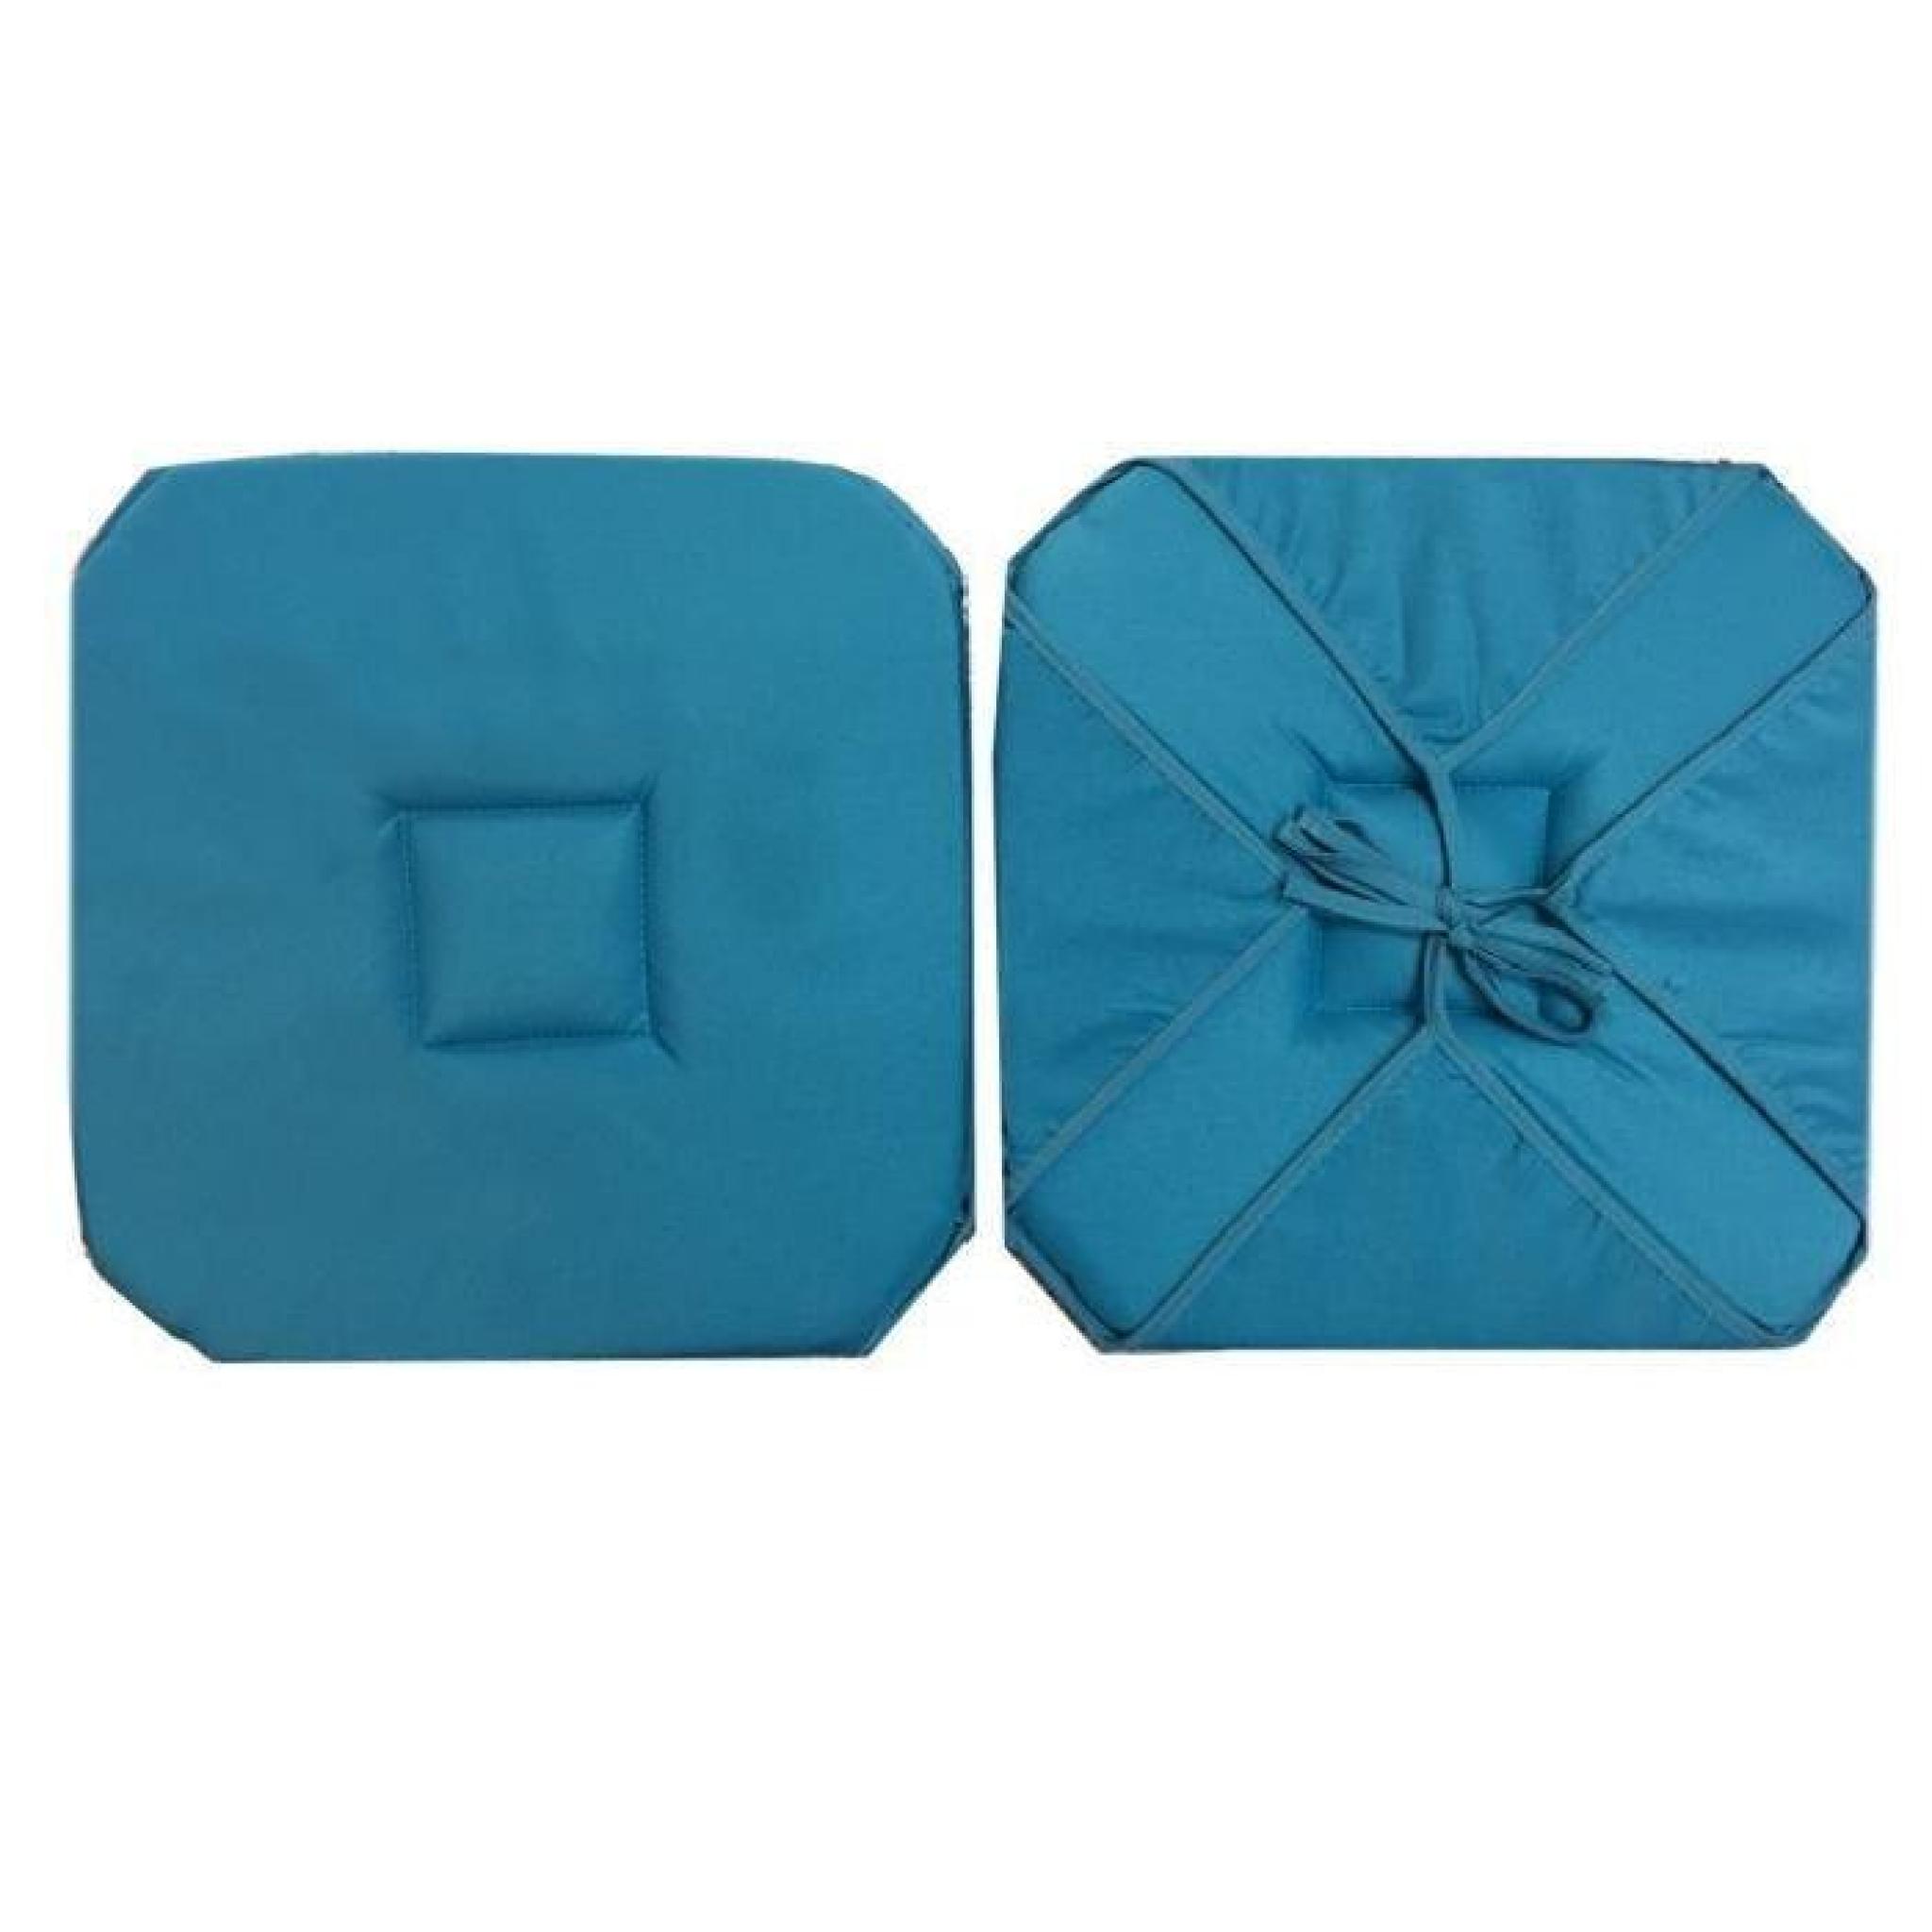 Coussin de chaise à rabats uni essentiel bleu 36 cm x 36 cm